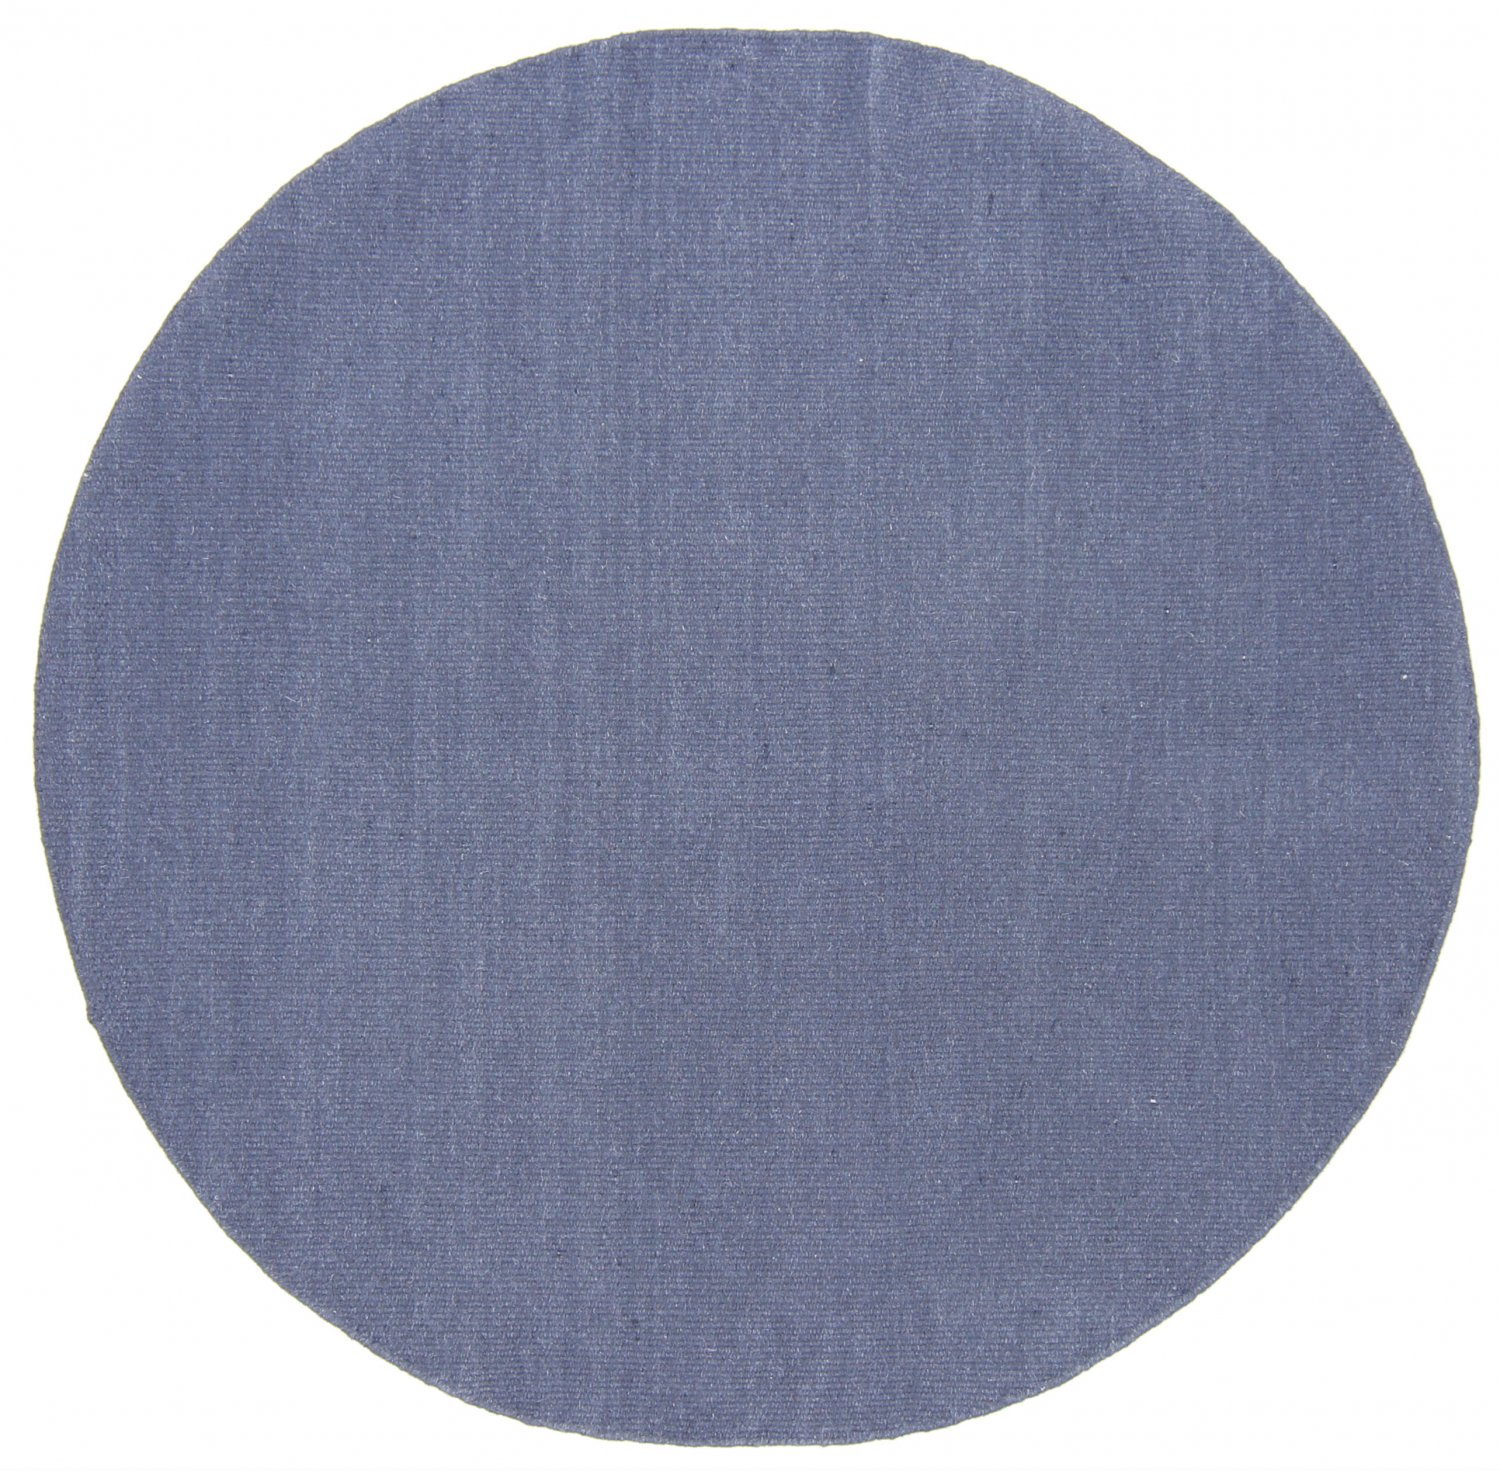 Rund matta - Bibury (blå)